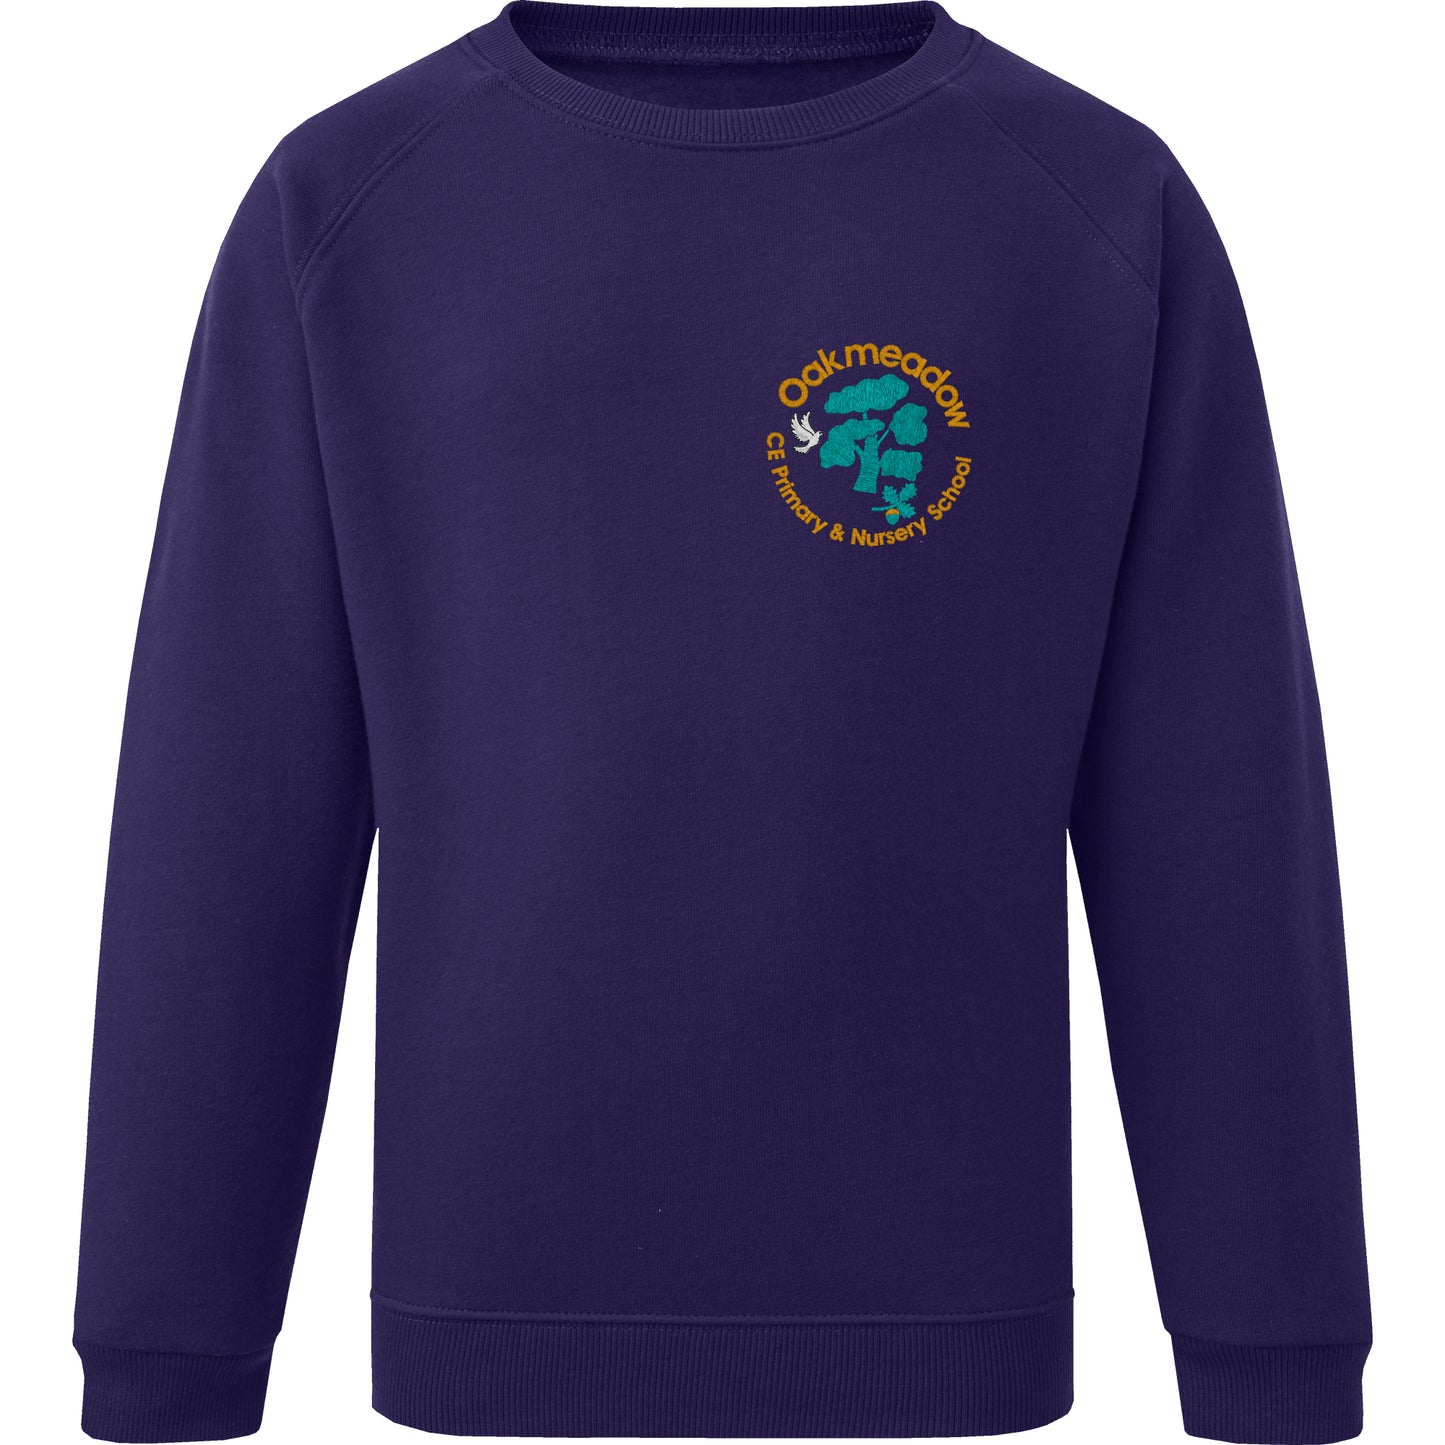 Oakmeadow School Sweaters are supplied by Ourschoolwear of Wrexham